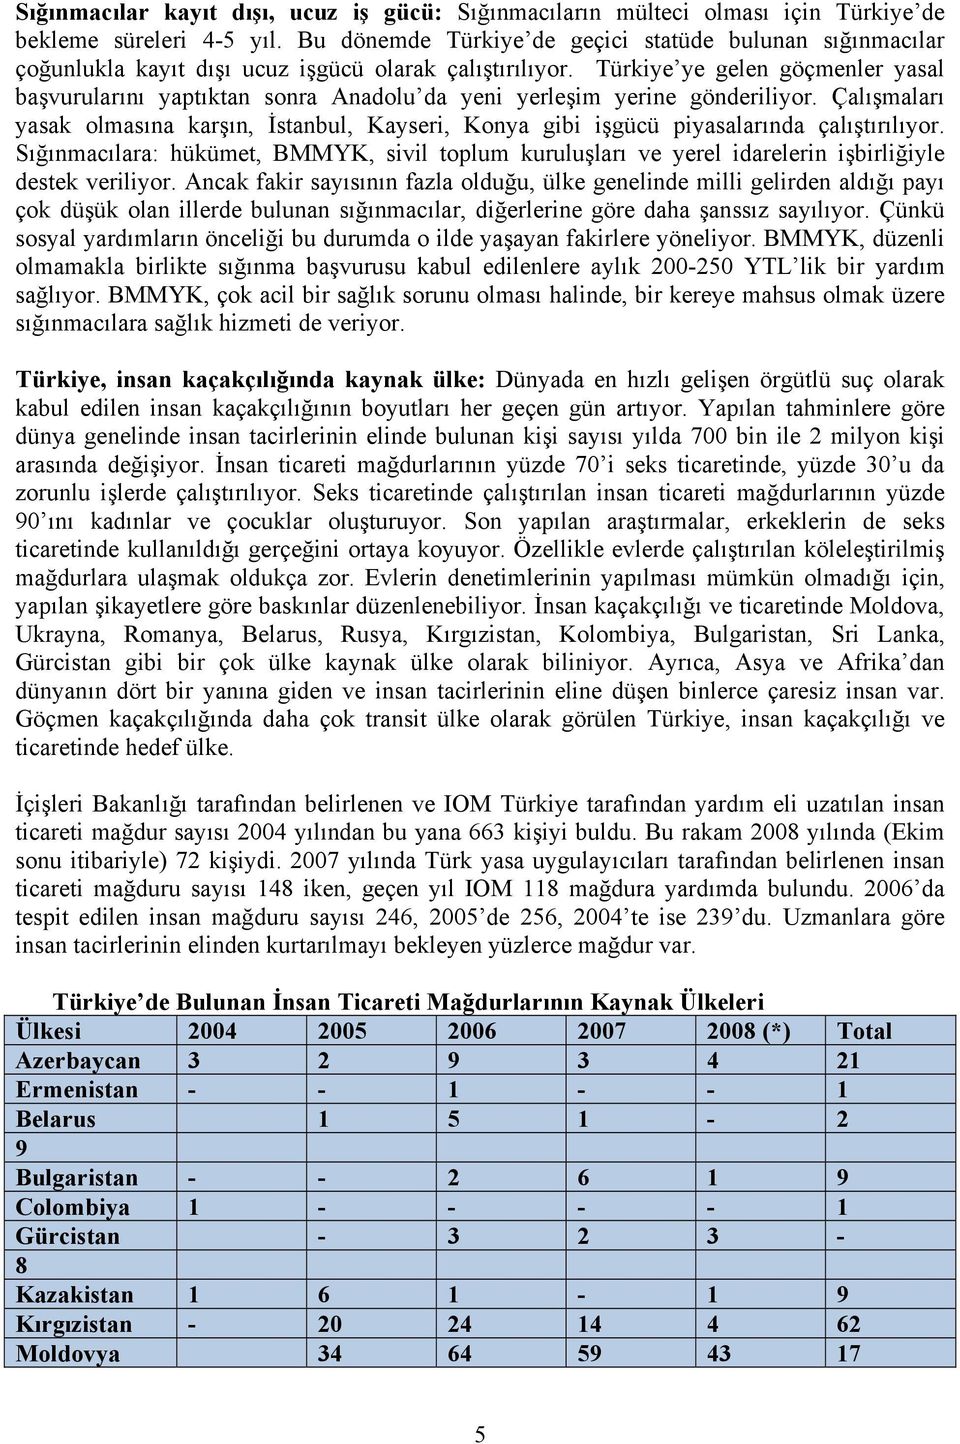 Türkiye ye gelen göçmenler yasal başvurularını yaptıktan sonra Anadolu da yeni yerleşim yerine gönderiliyor.